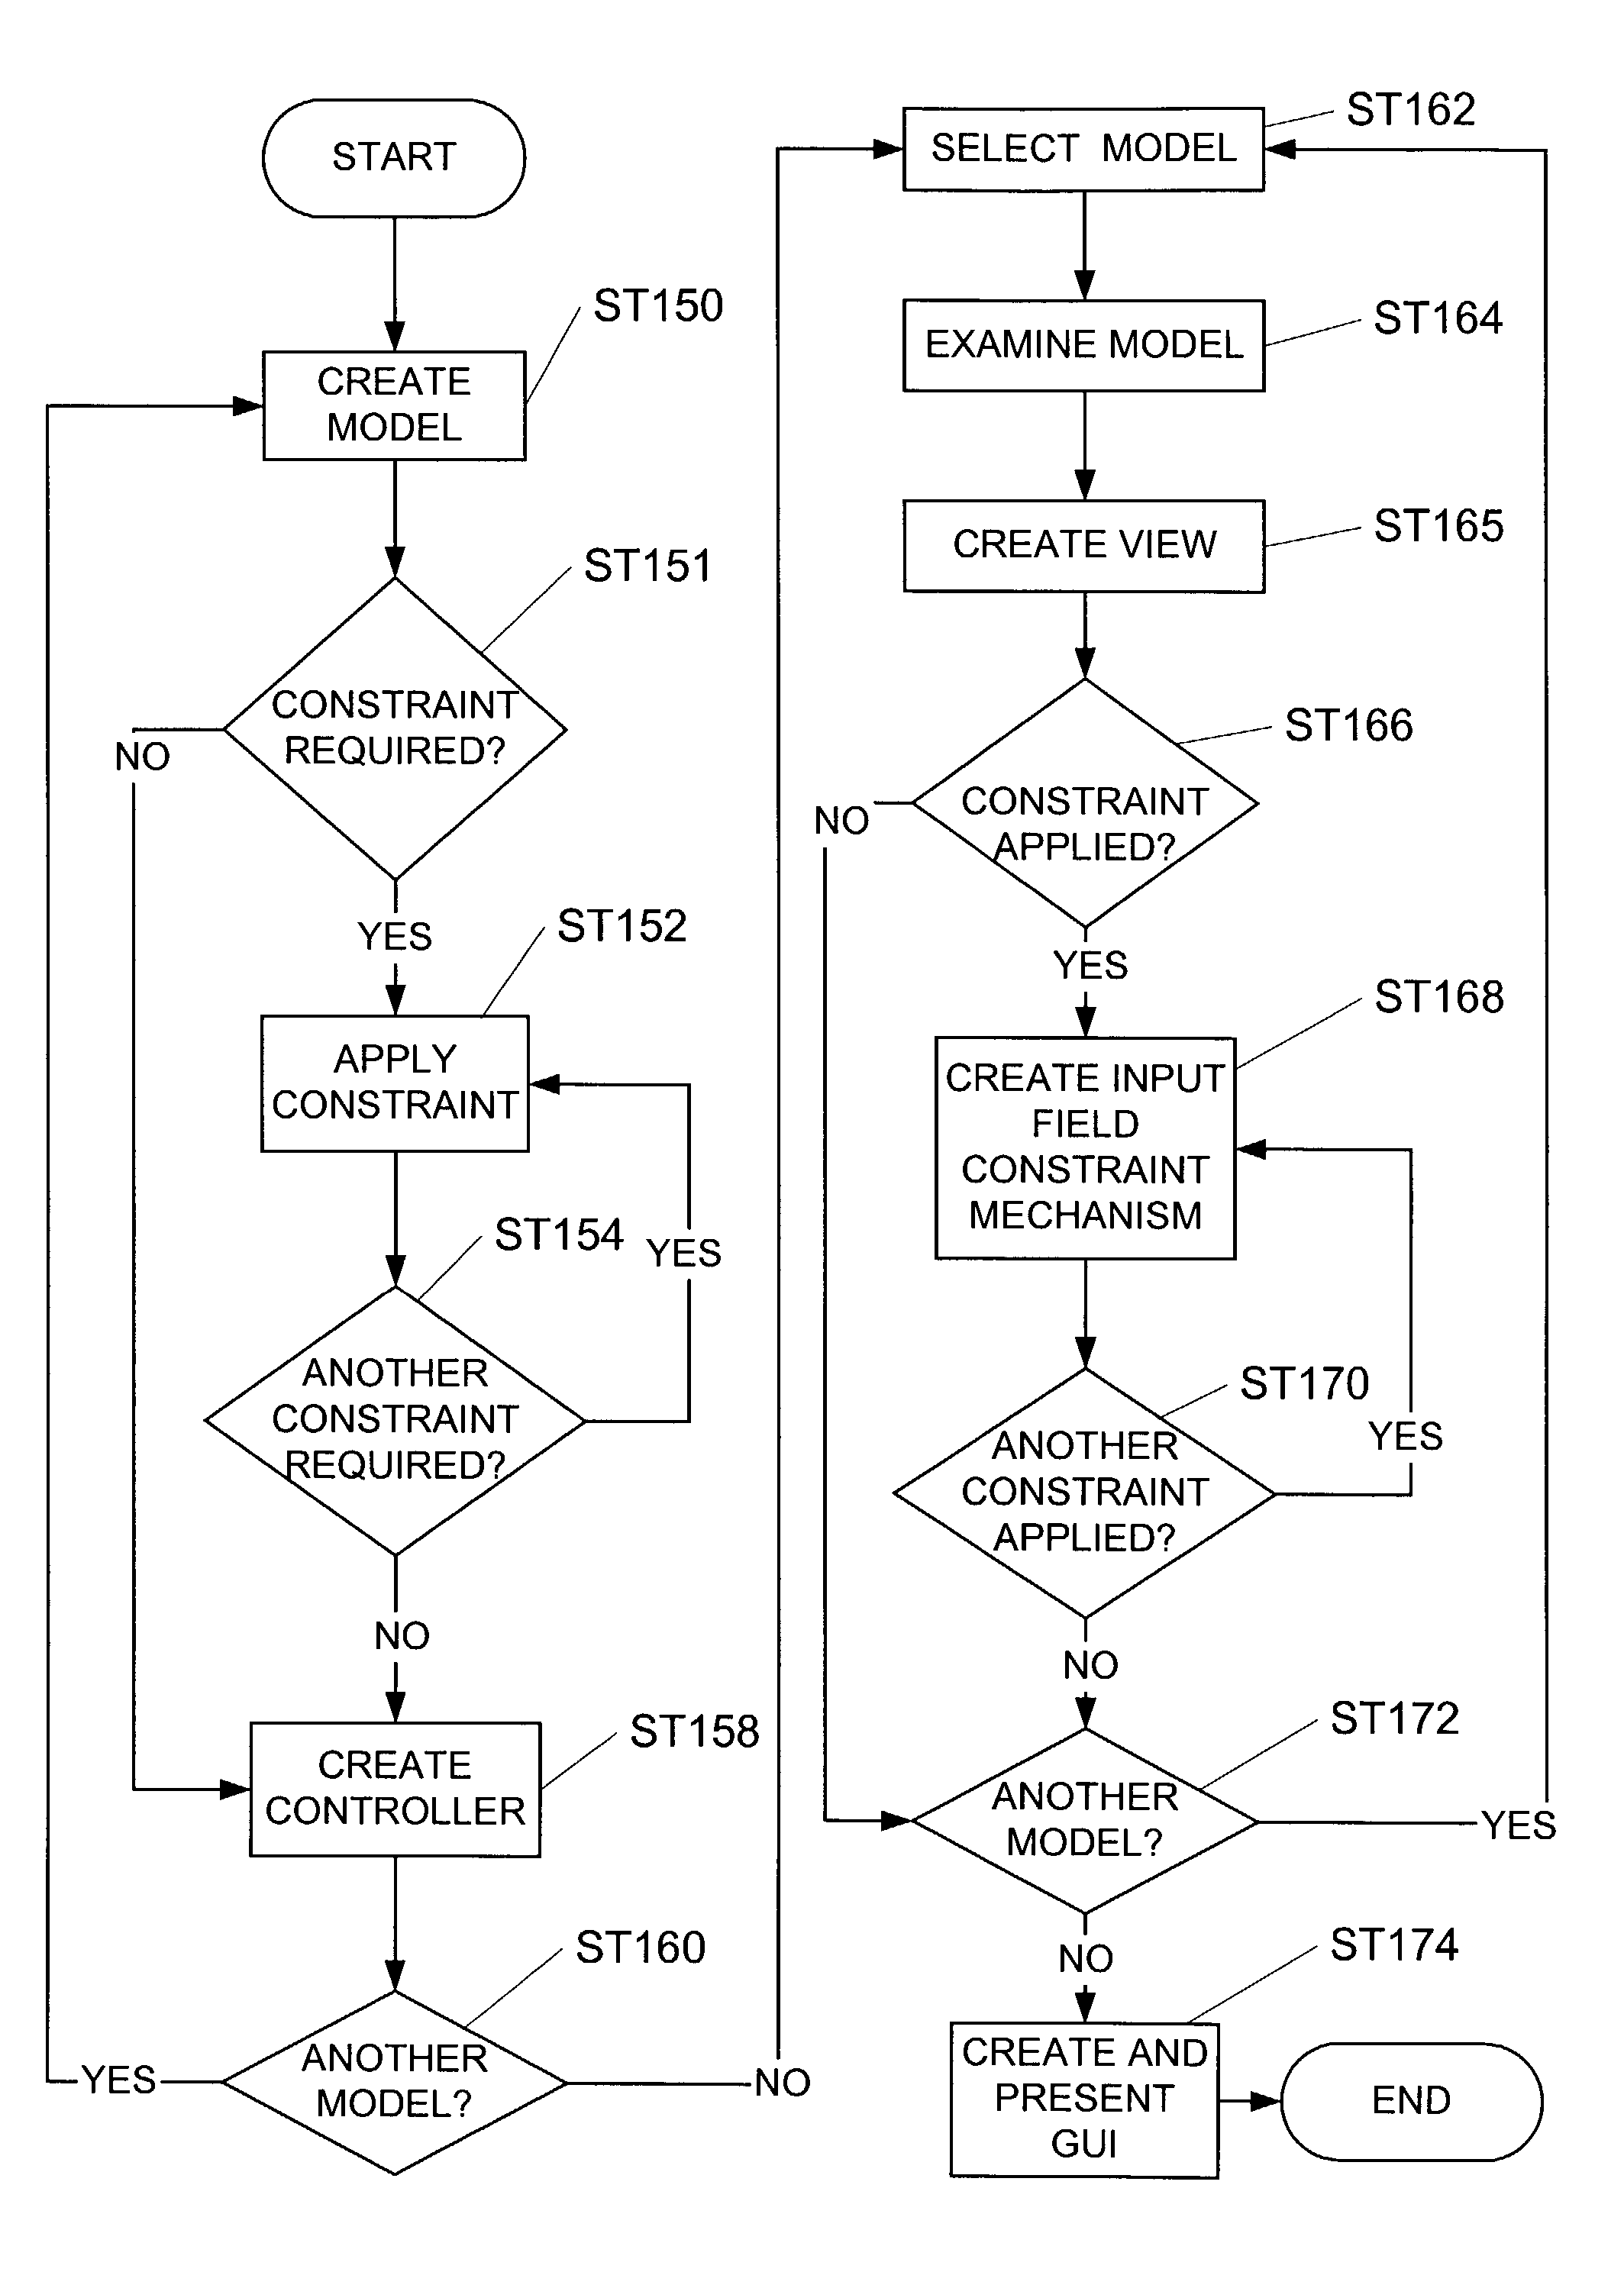 Input field constraint mechanism